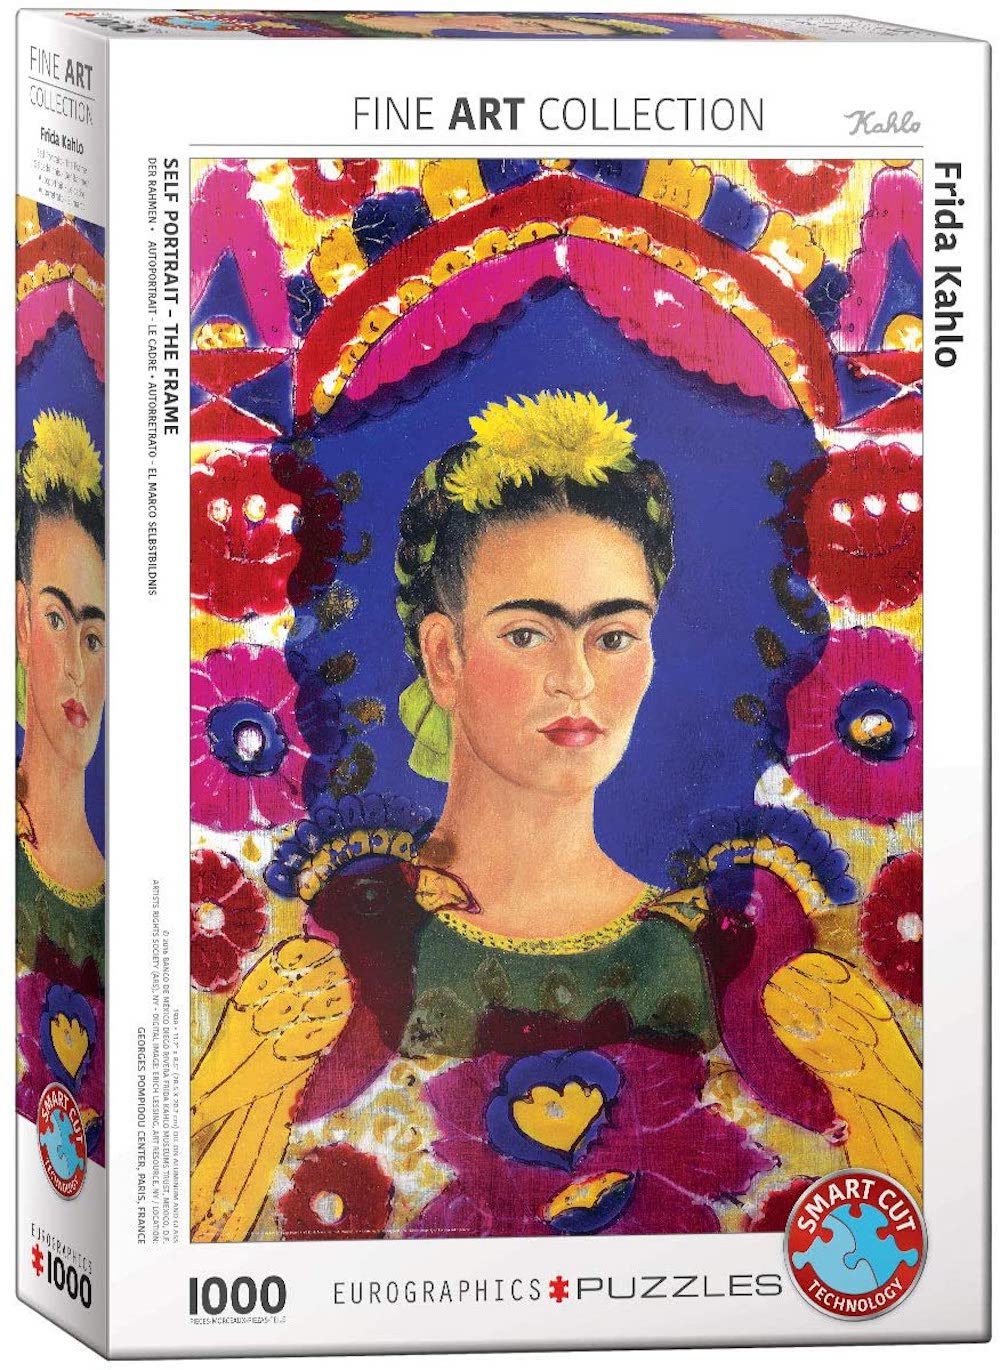 Frida Kahlo puzzle. 